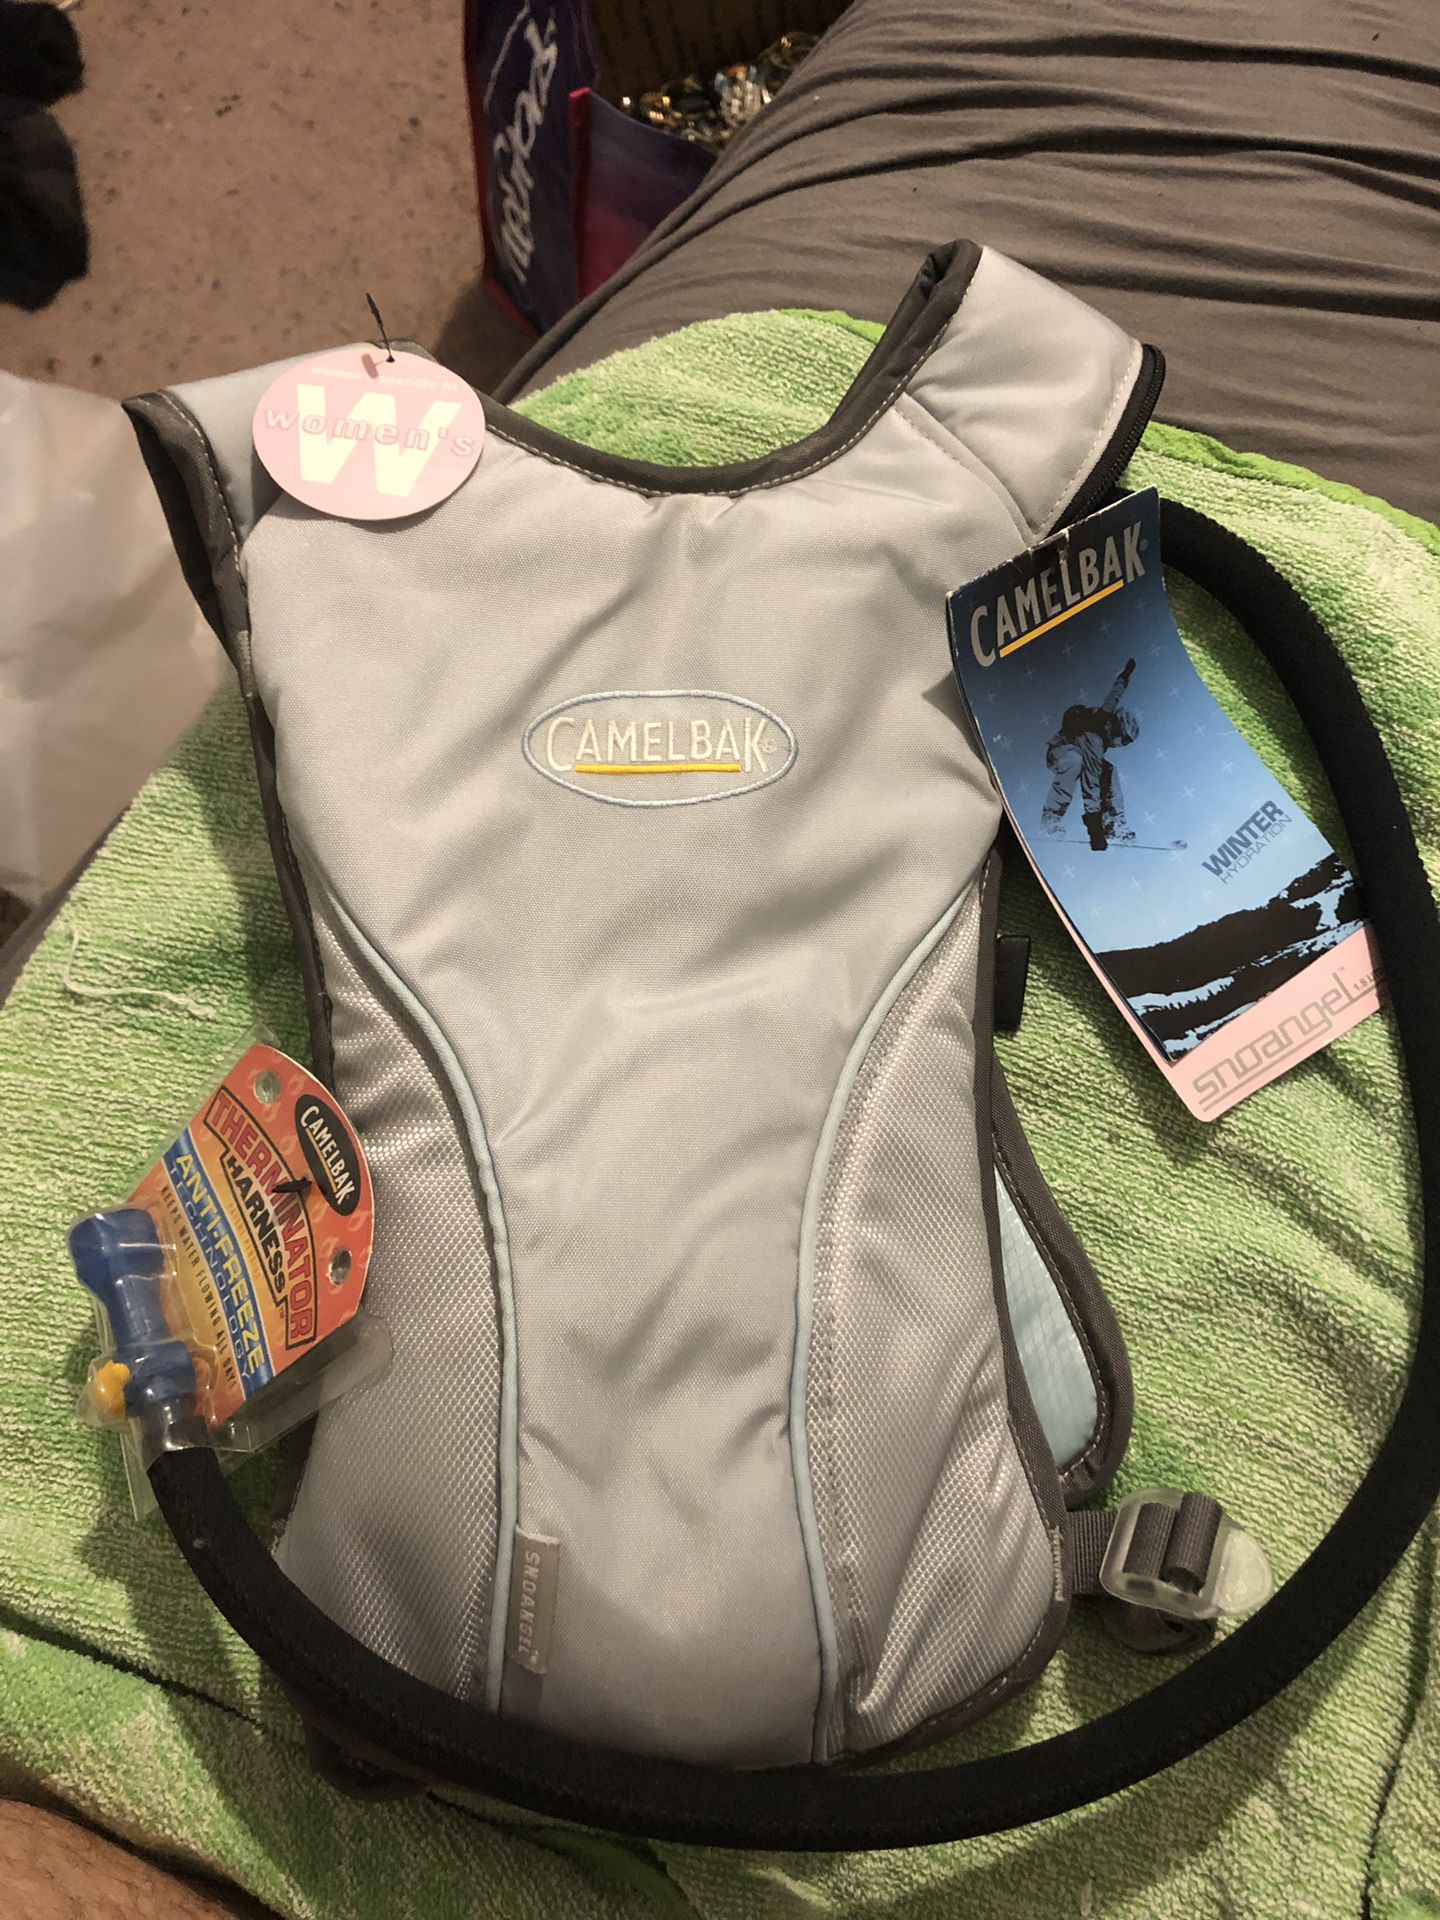 New camelbak snoangel backpack